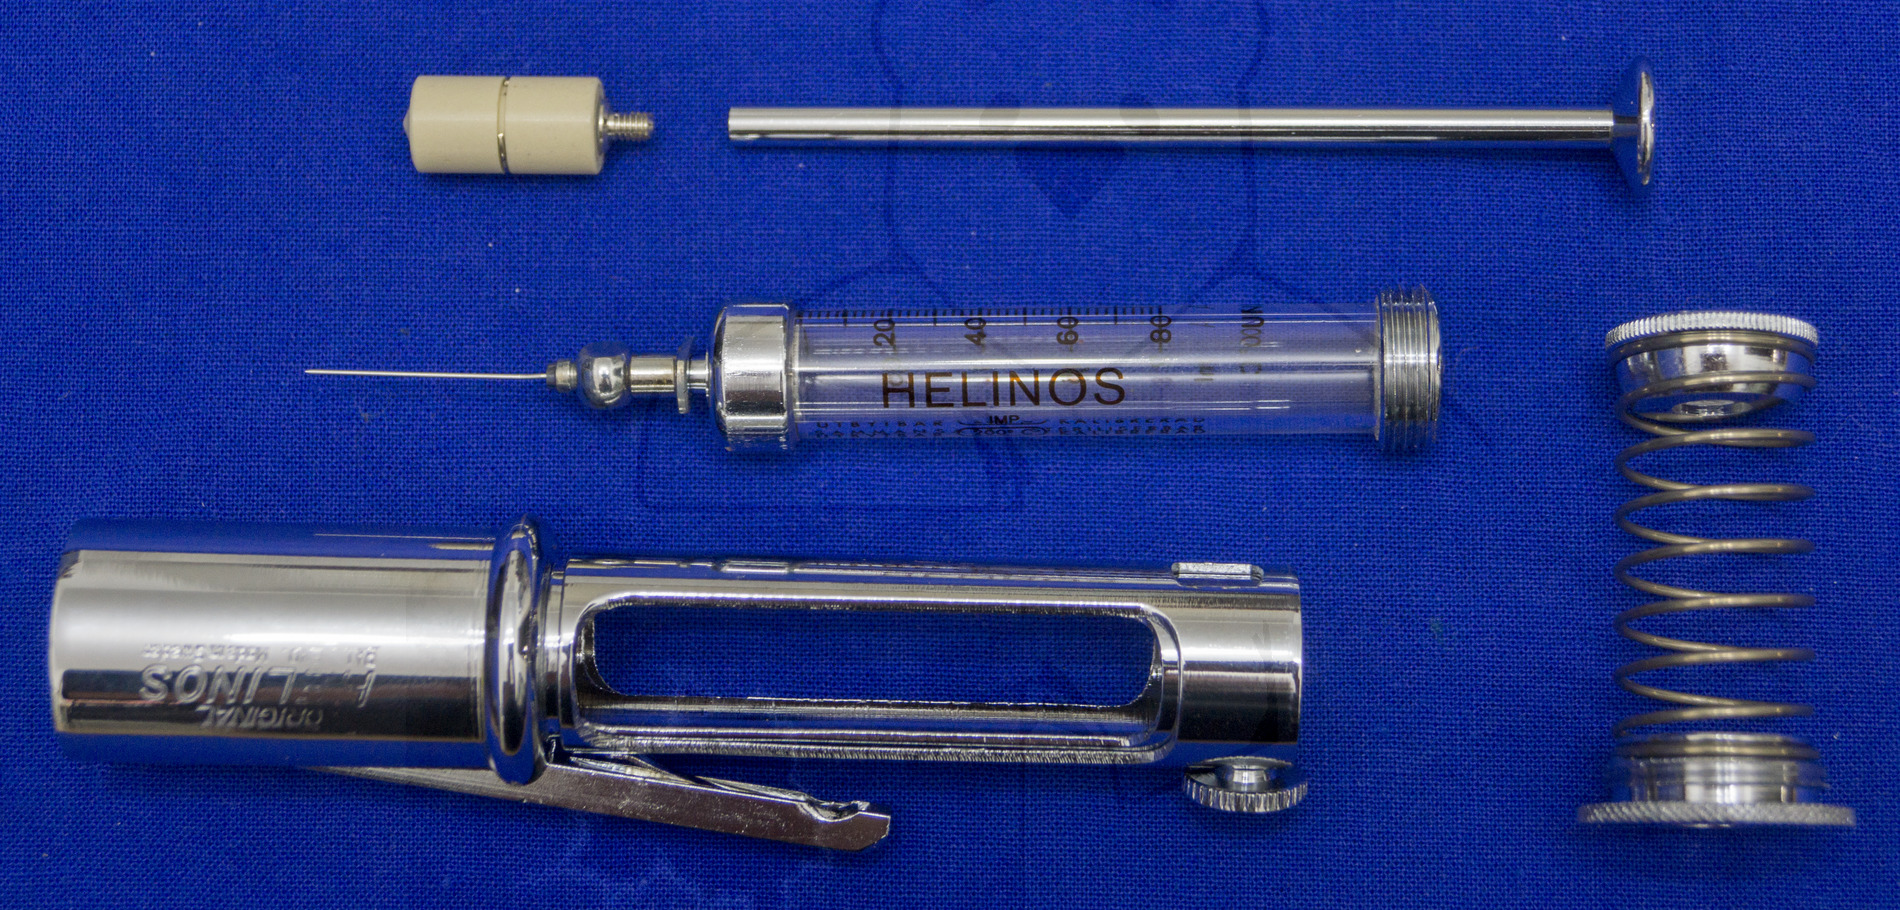 Insulininjektor "Helinos", Mitte der 1950'er Jahre, Bestandteile des Injektors